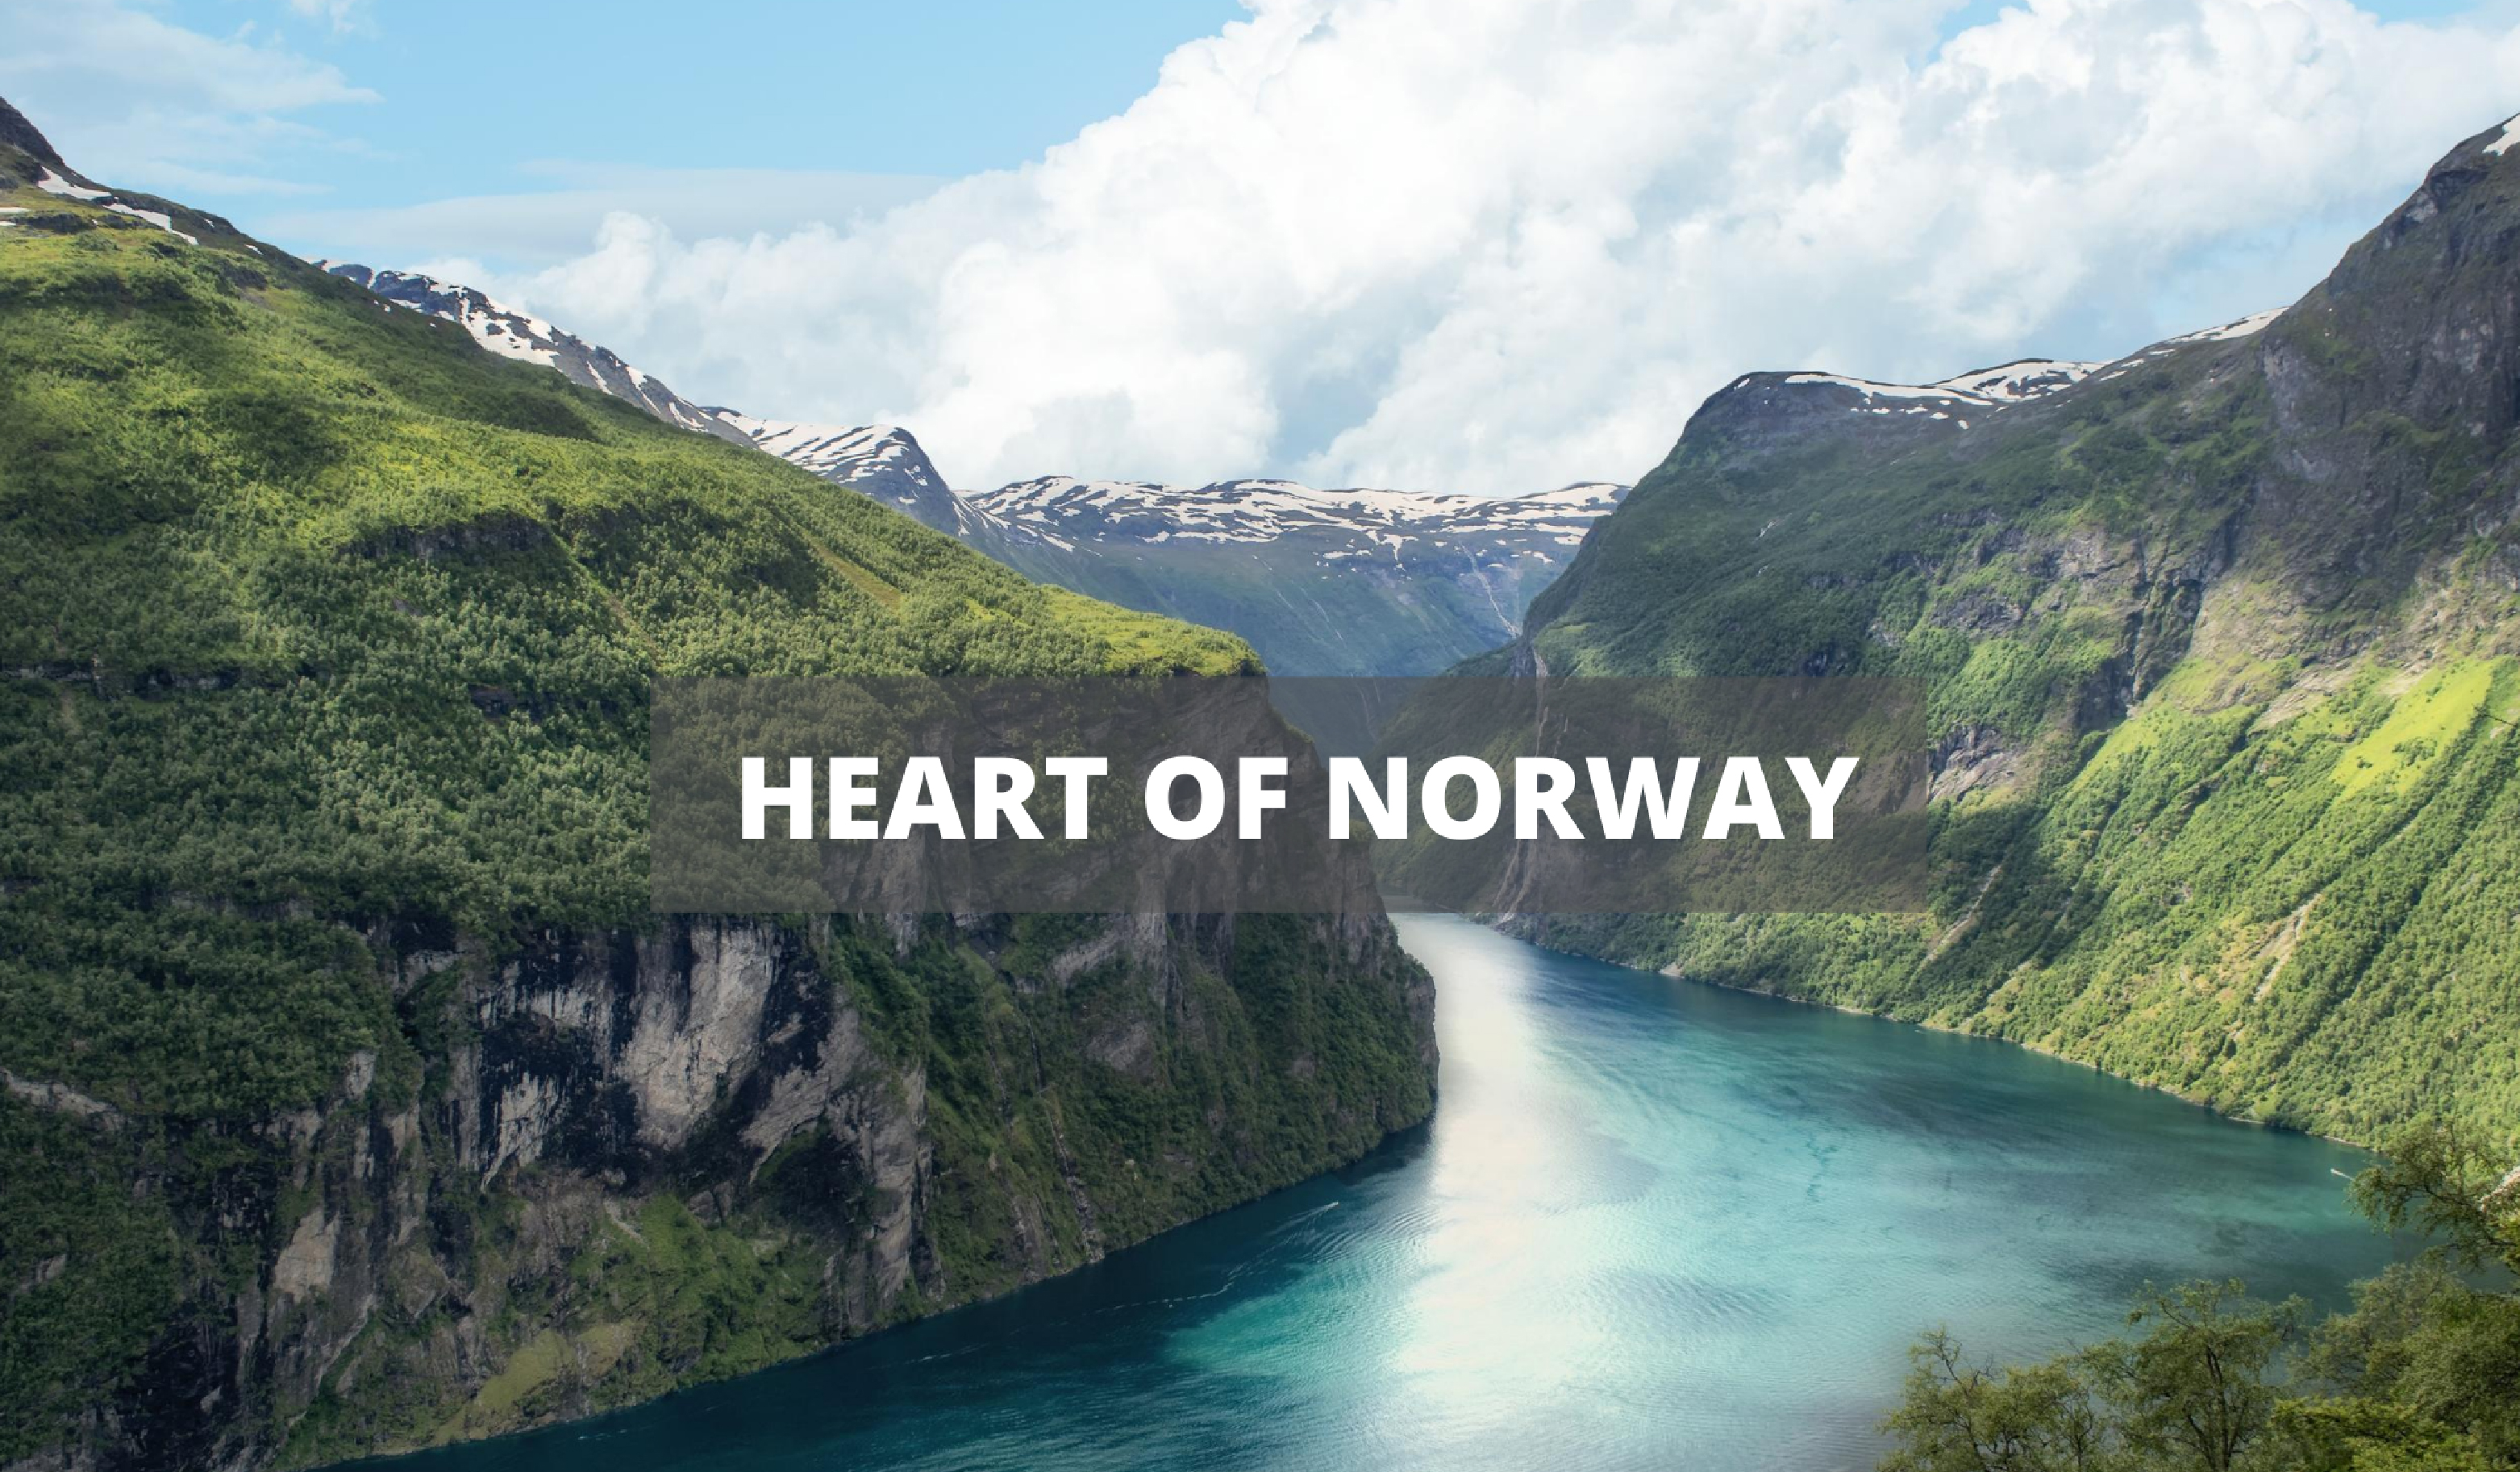 HEART OF NORWAY